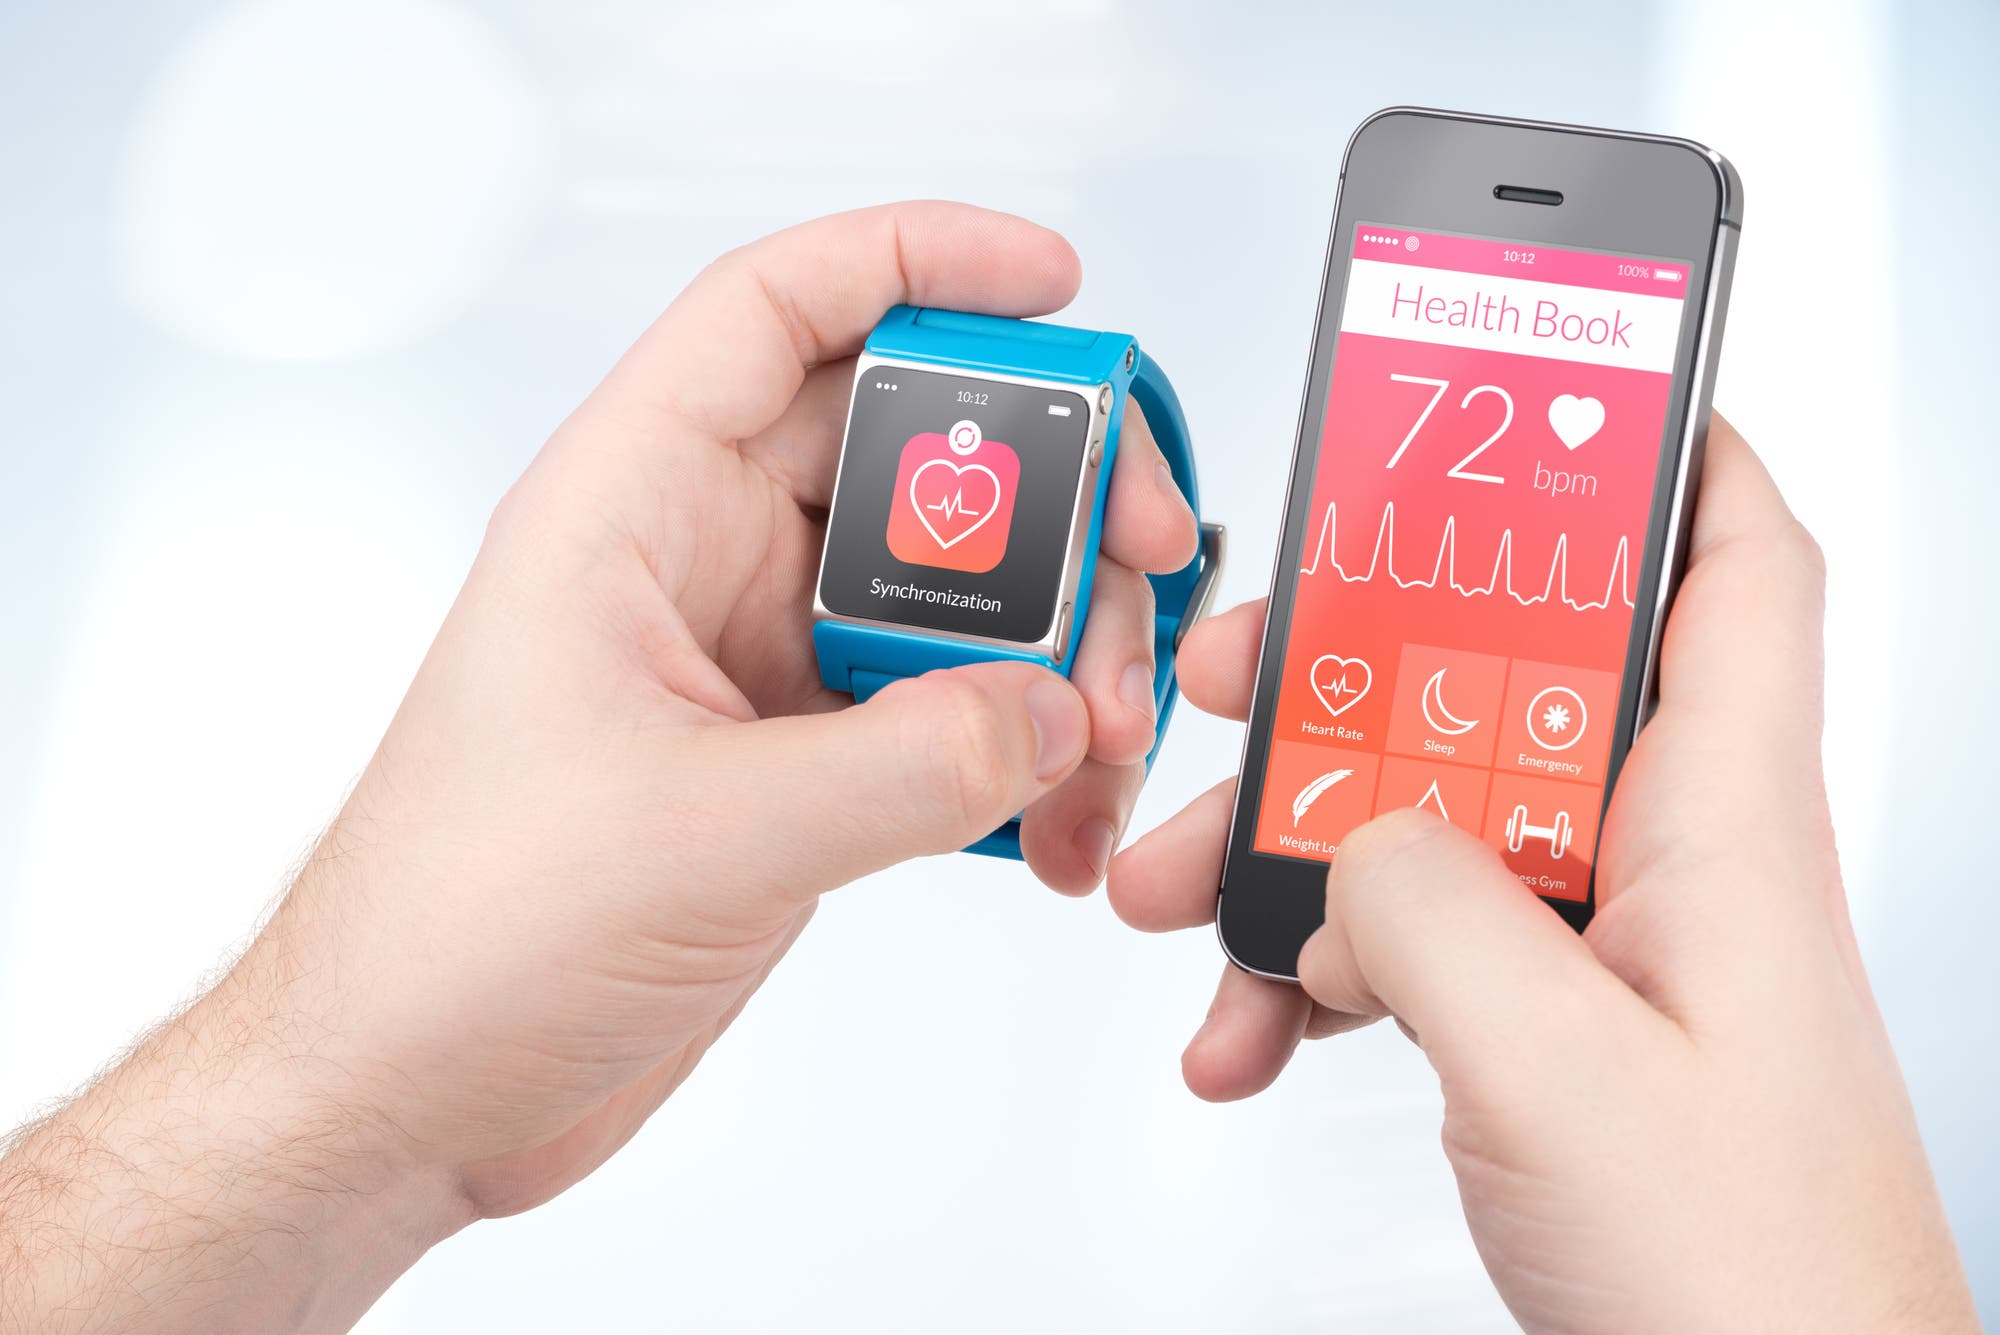 Links eine Smartwatch, rechts ein Smartphone, die Daten aufeinander übertragen.